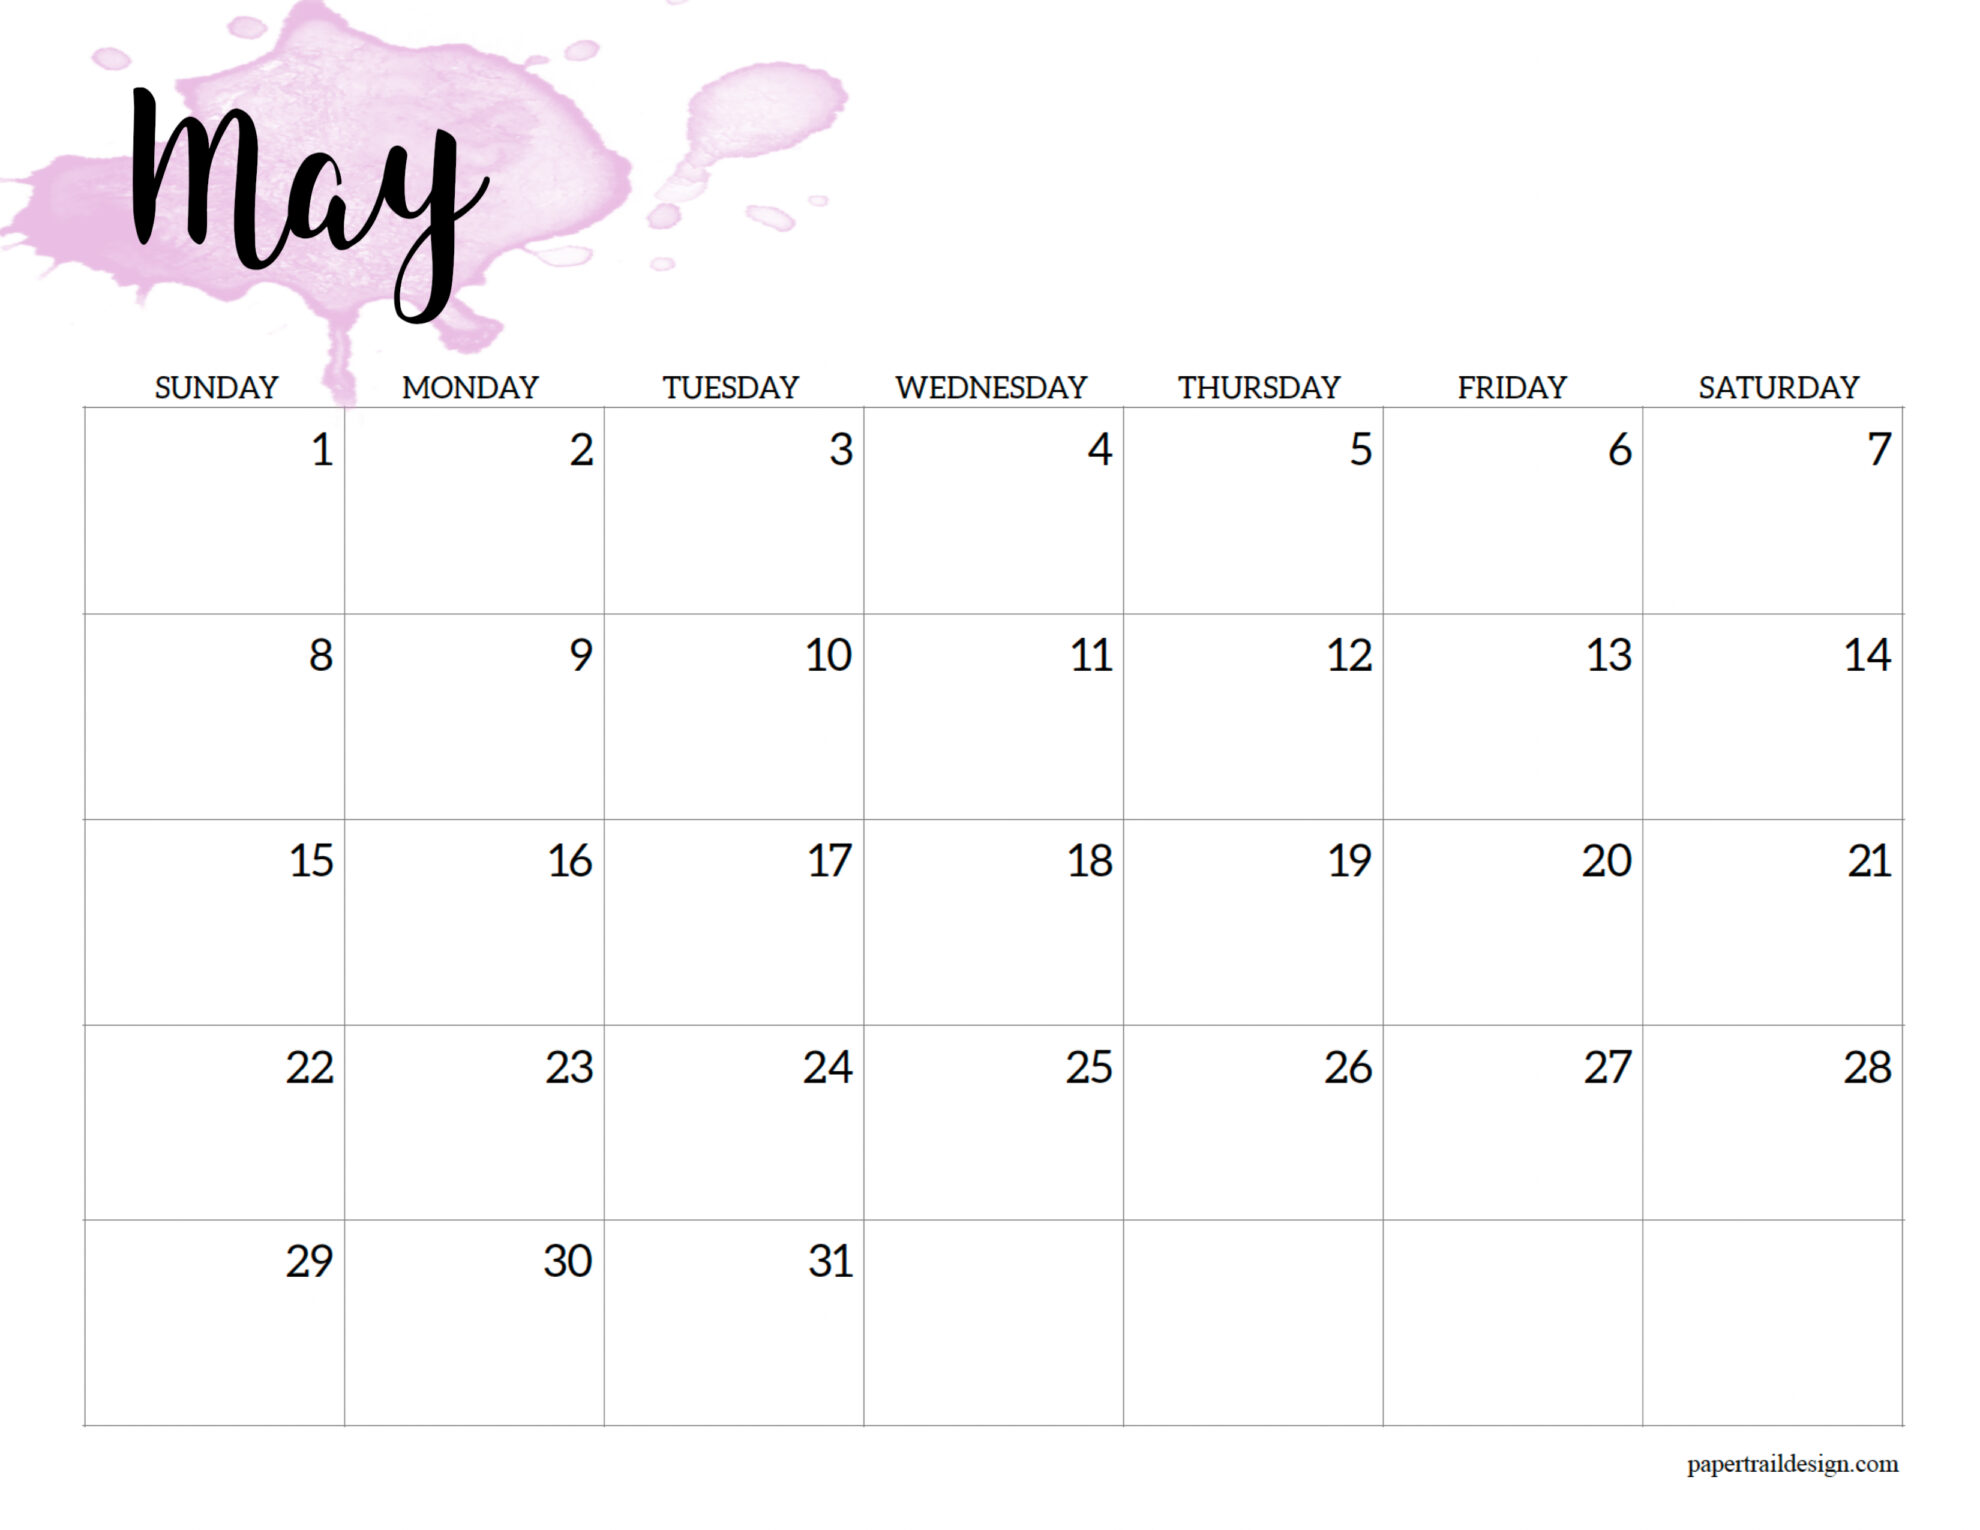 May 2022 Blank Calendar 2022 Calendar Printable - Watercolor - Paper Trail Design